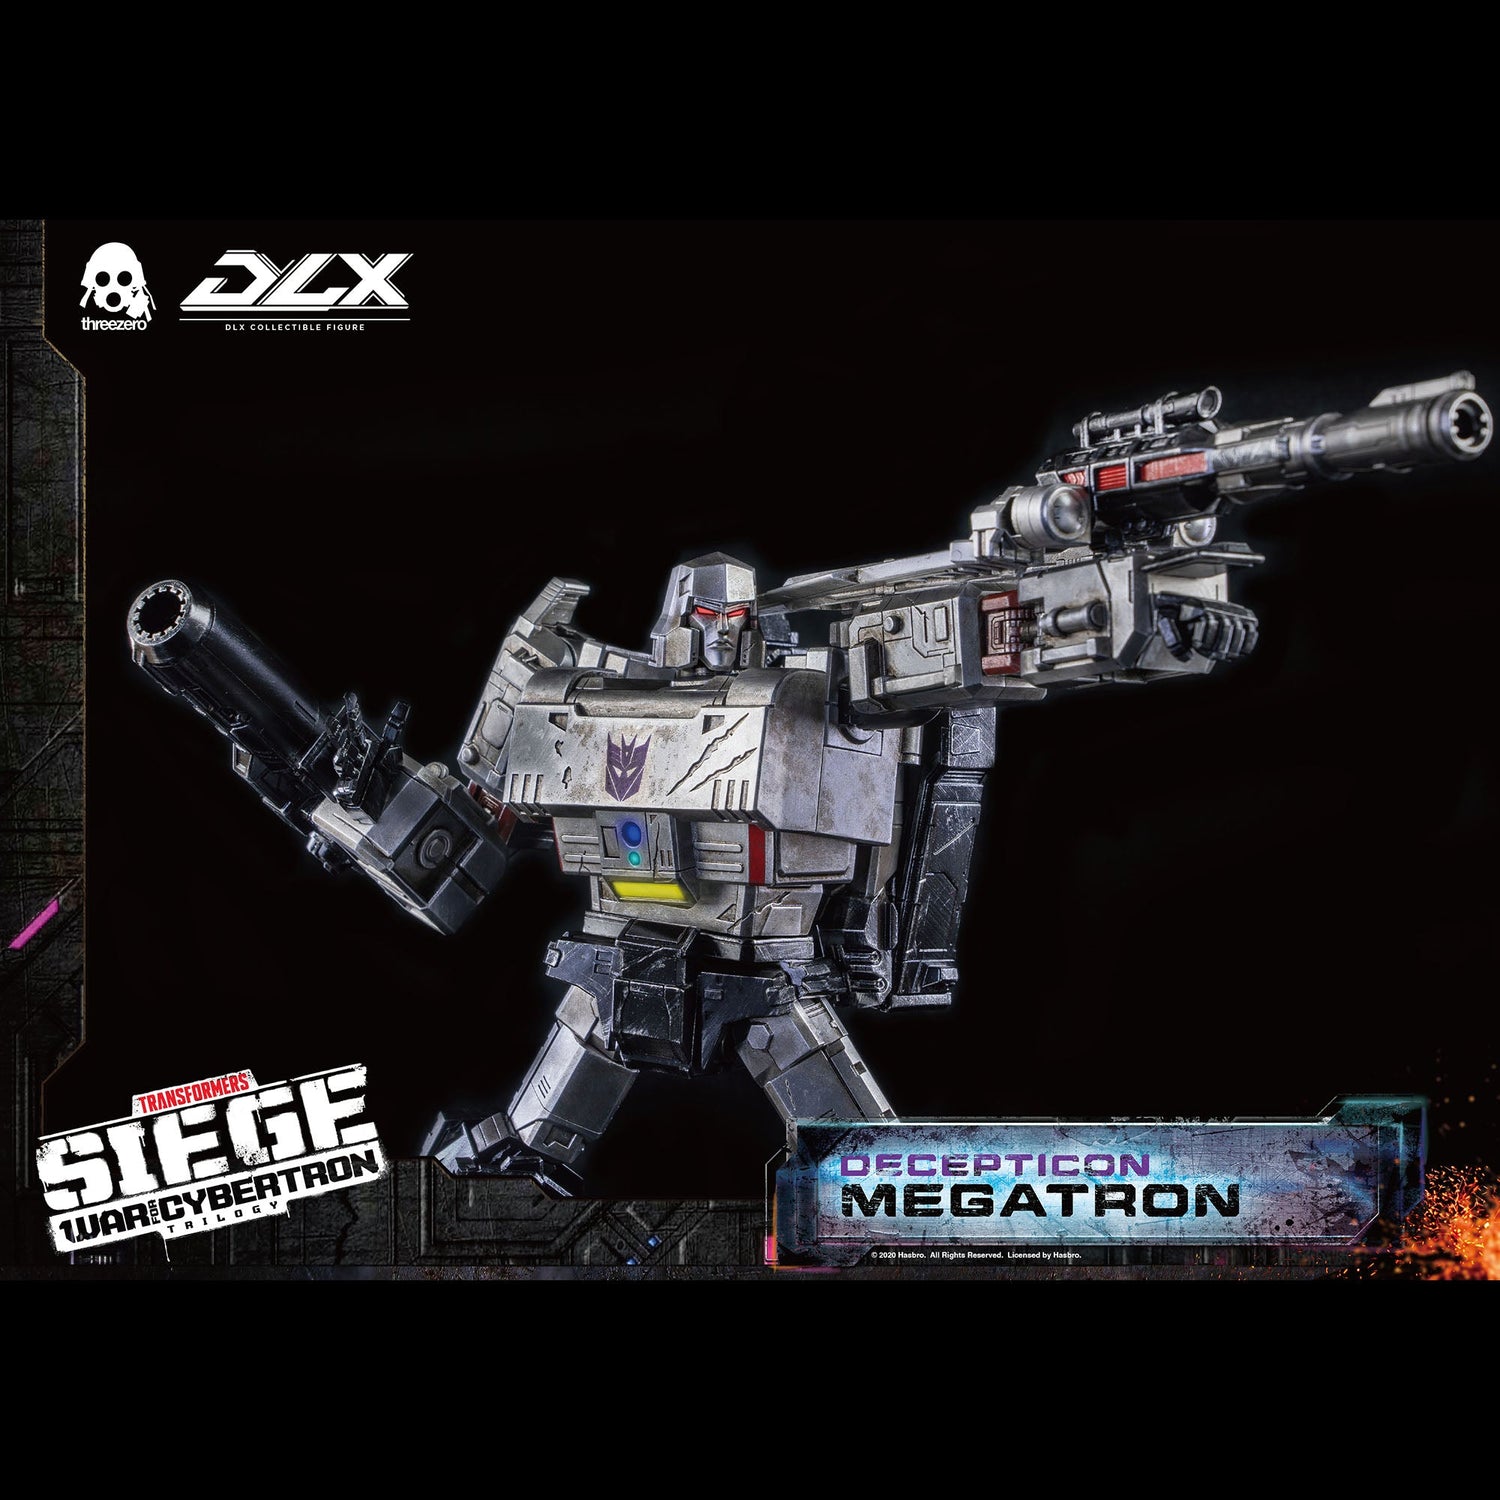 Transformers: War For Cybertron Trilogy  DLX Megatron